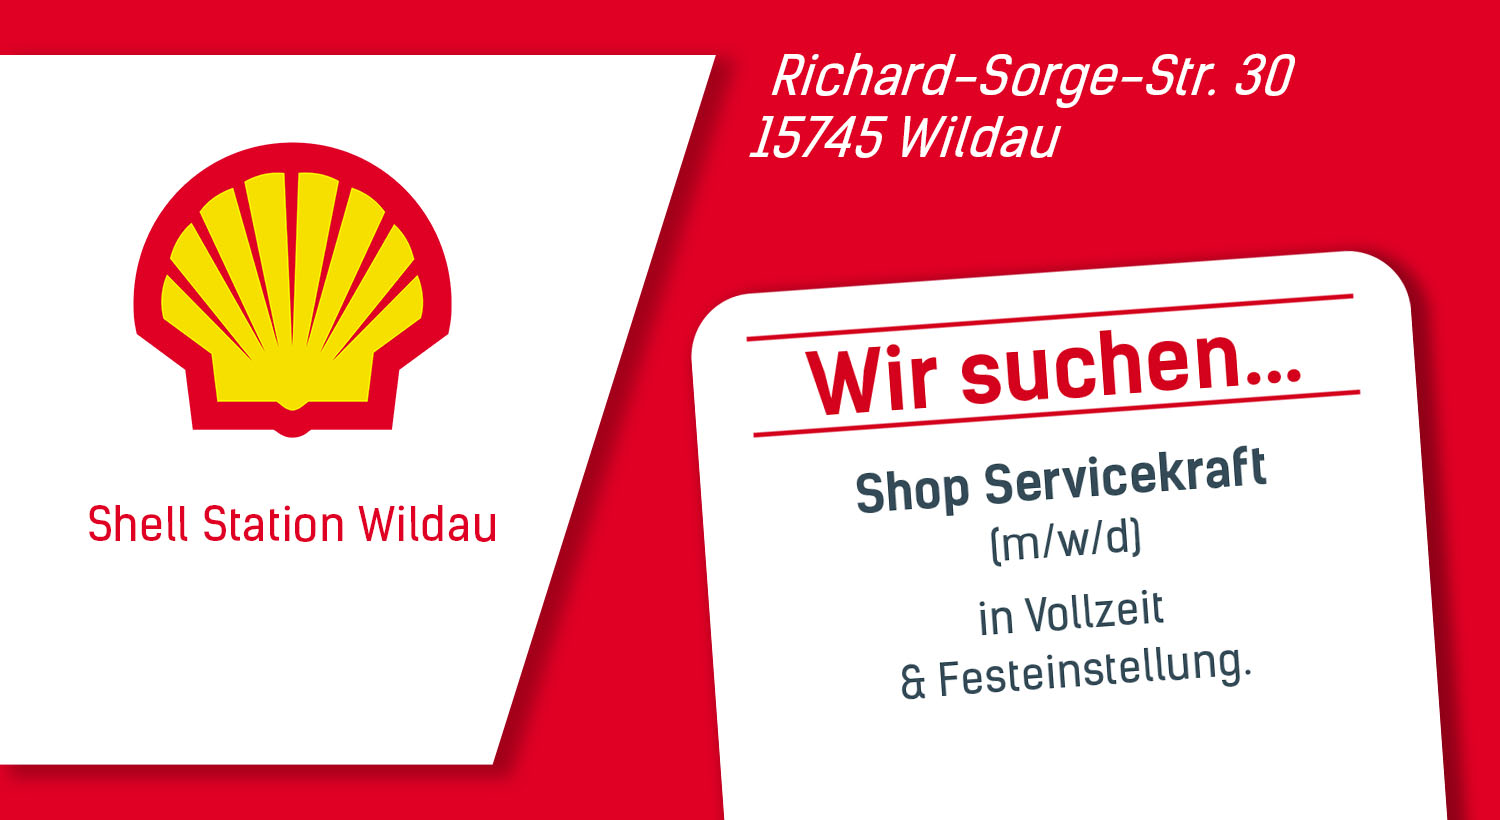 Shell Station Wildau